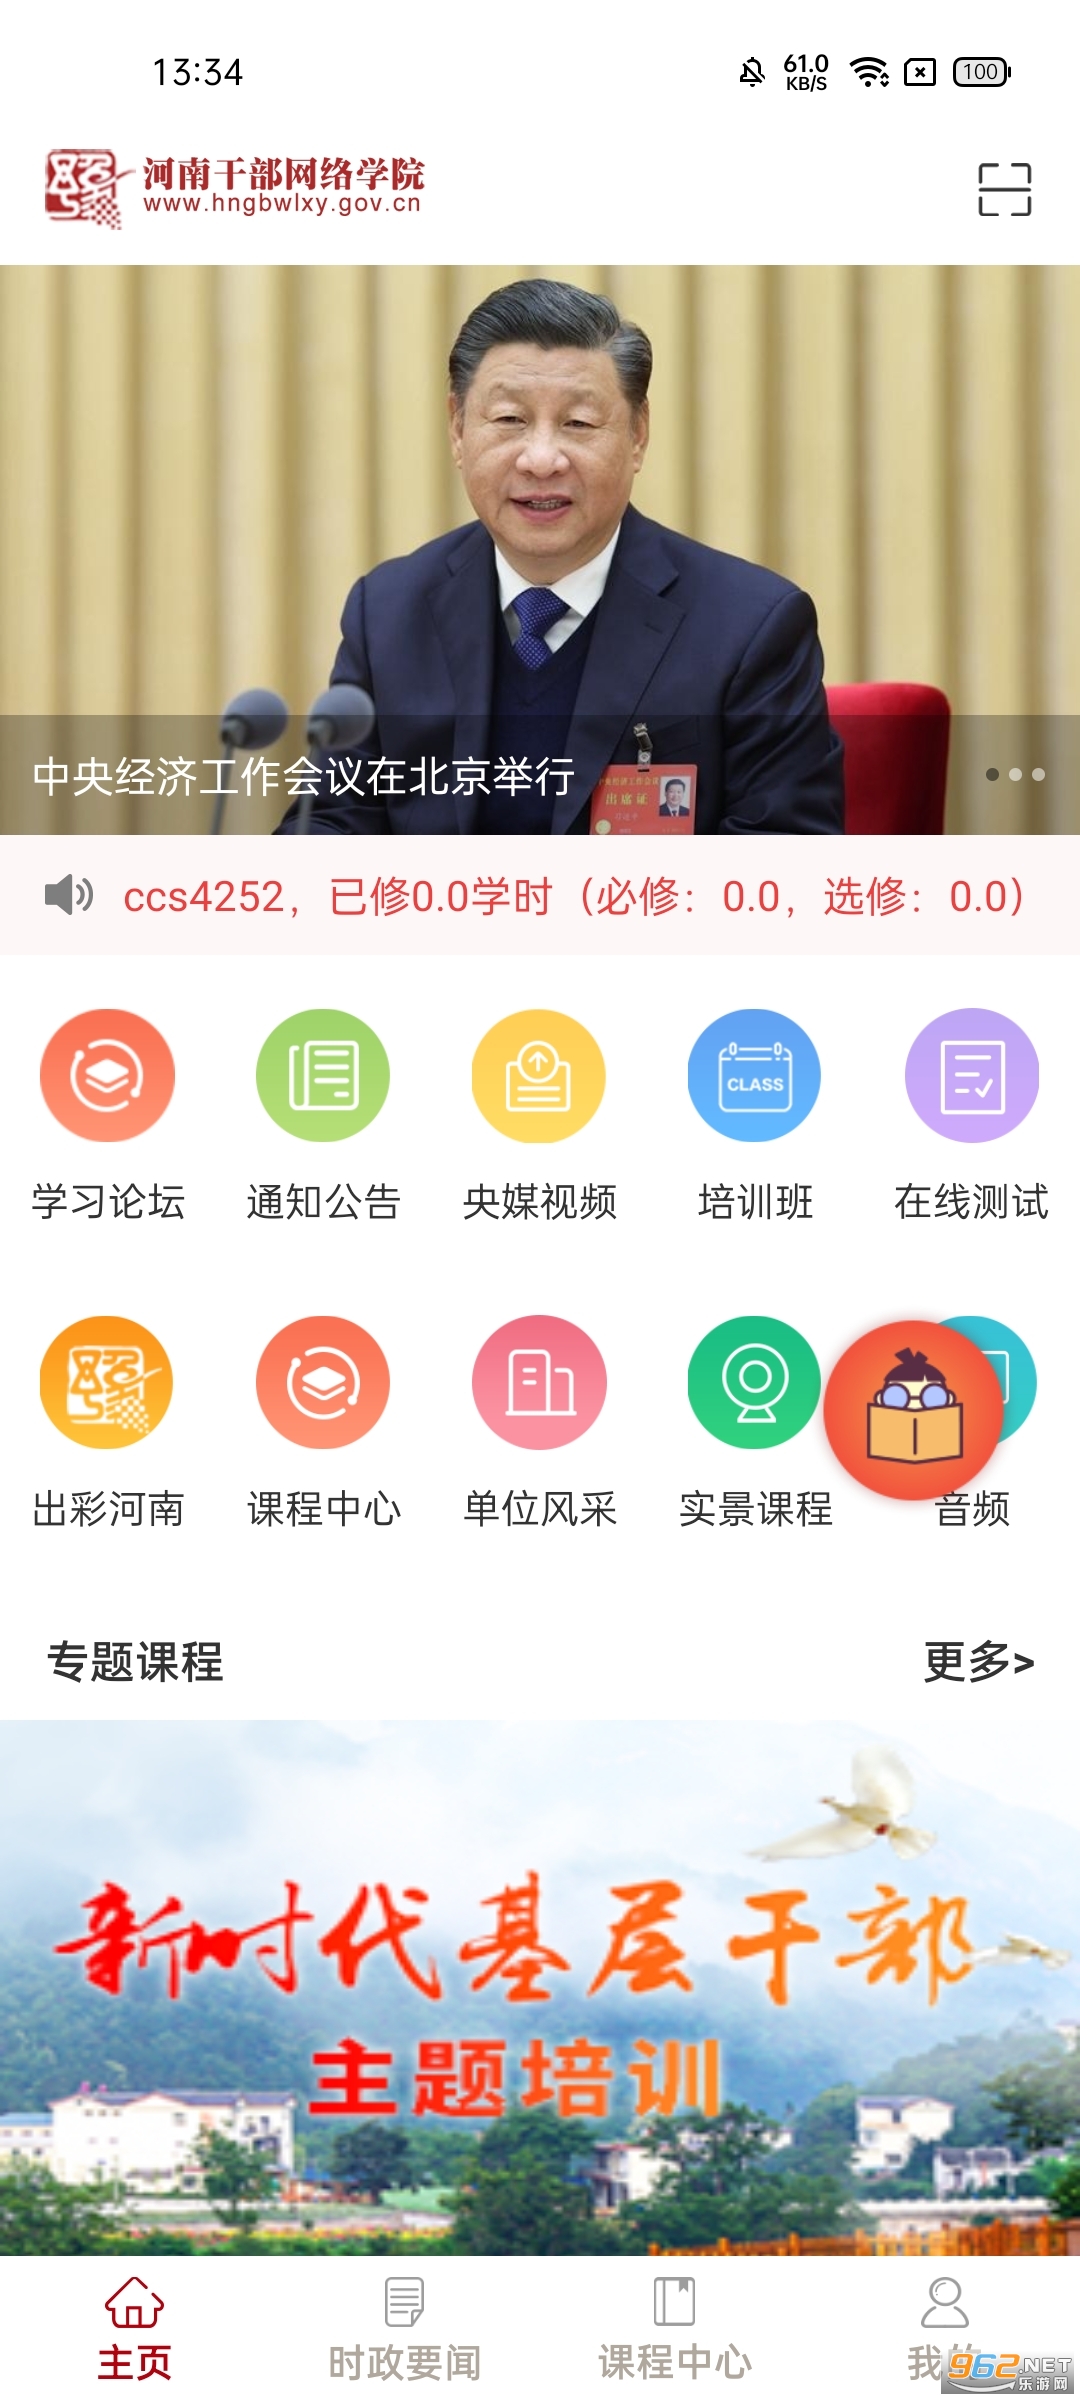 河南干部网络学院app手机版v12.4.7 官方版截图3